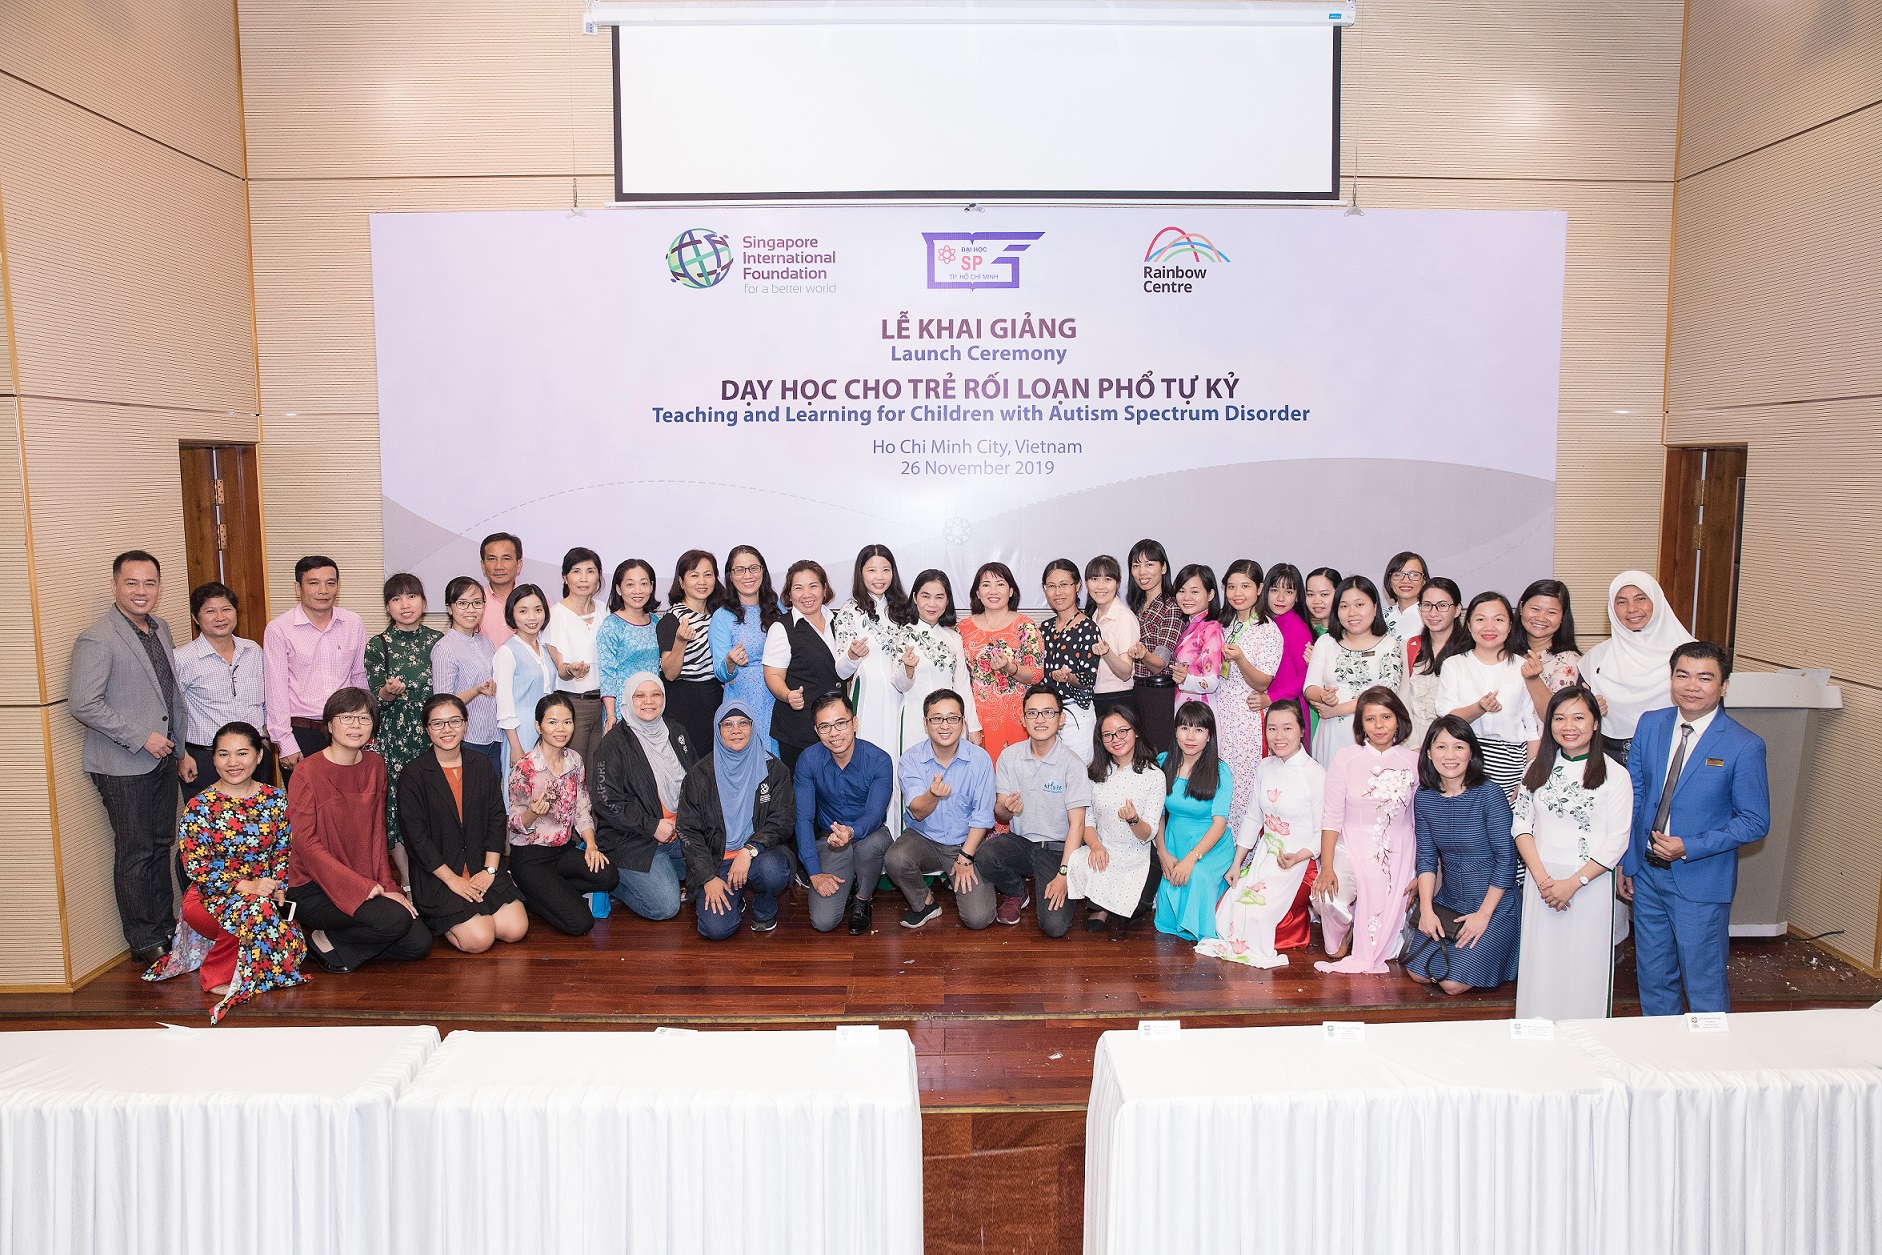 Đại diện từ Singapore và Việt Nam cùng với người tham gia huấn luyện chụp hình kỷ niệm tại Lễ khai giảng tại TP.HCM, Việt Nam - Dự án sẽ tiếp cận 730 giáo viên giáo dục đặc biệt và những người liên quan